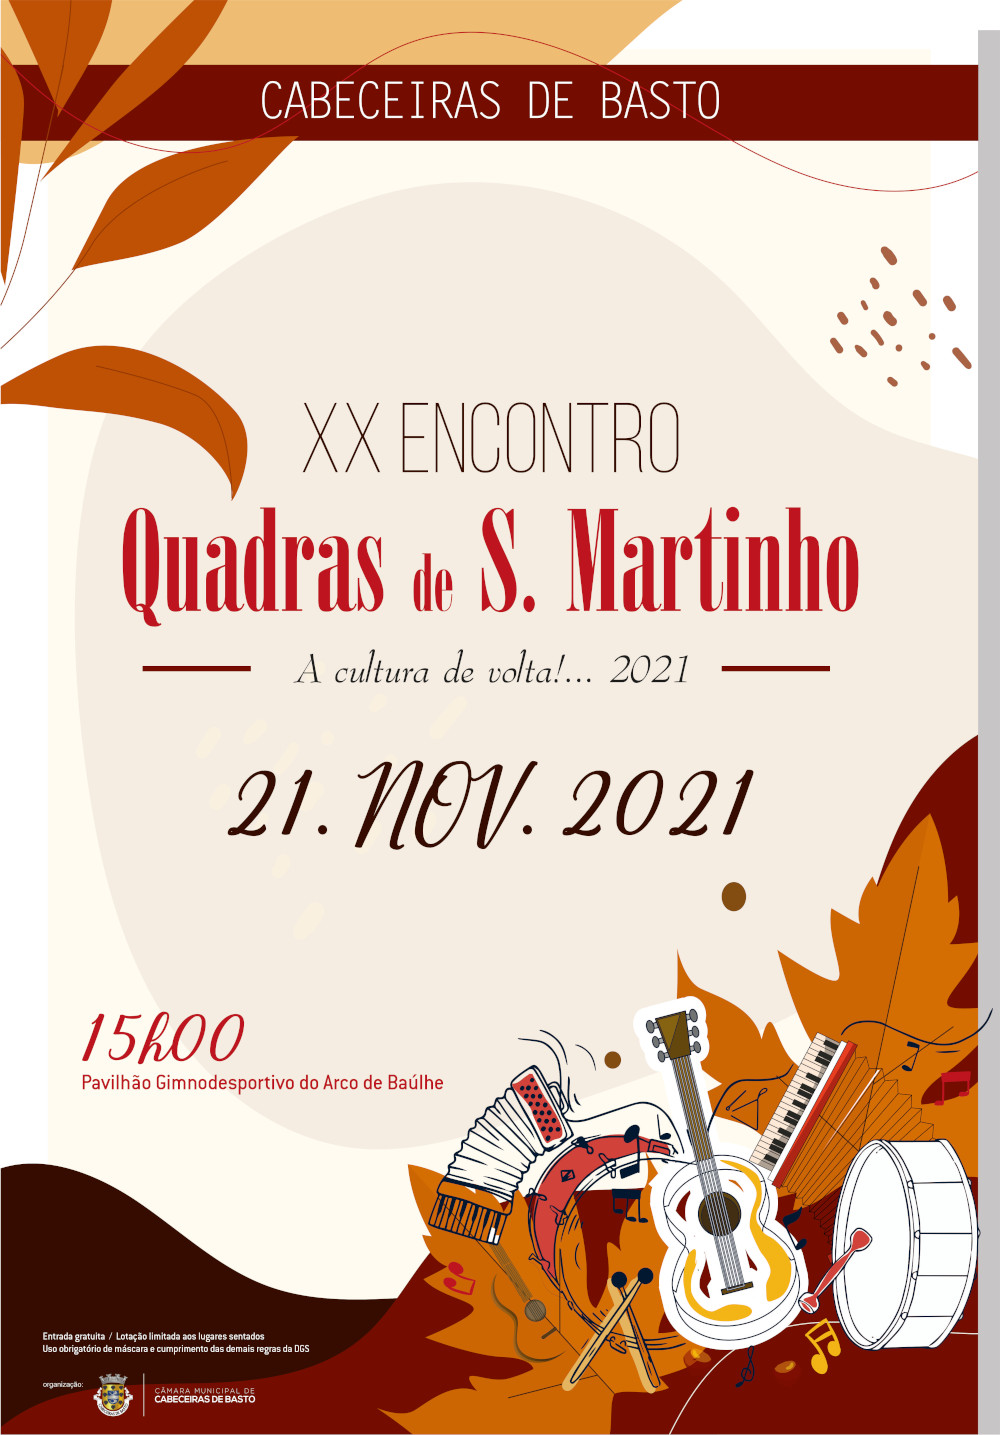 Leia mais sobre XX Encontro de Quadras de S. Martinho no Pavilhão Desportivo do Arco de Baúlhe